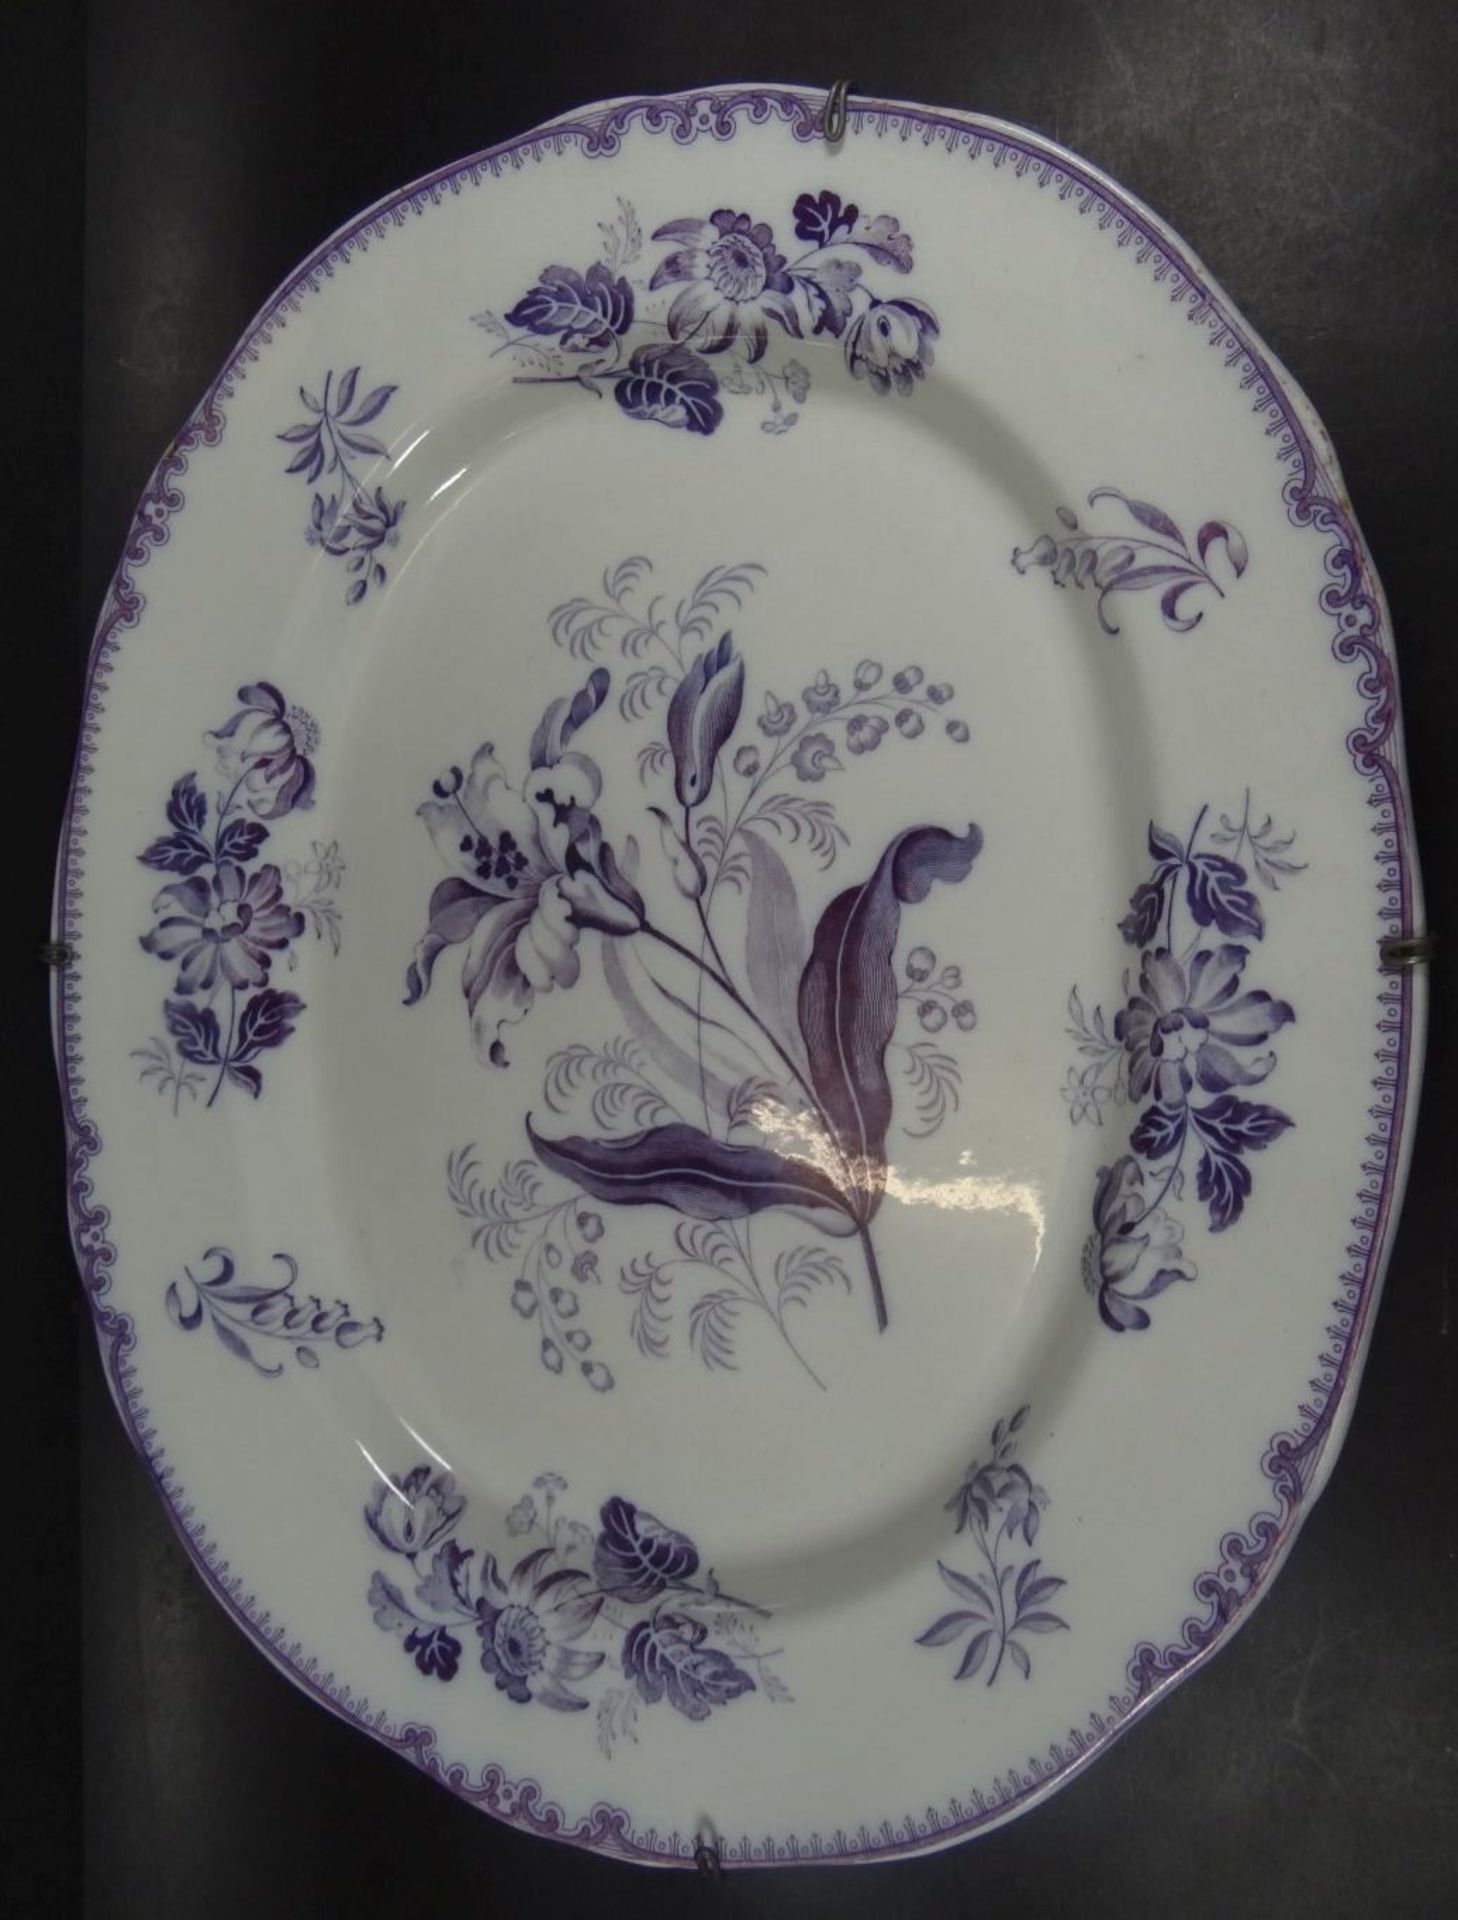 grosse ovale Platte (Gänsebräter) mit floralen Dekor um 1870, 47x39- - -22.61 % buyer's premium on